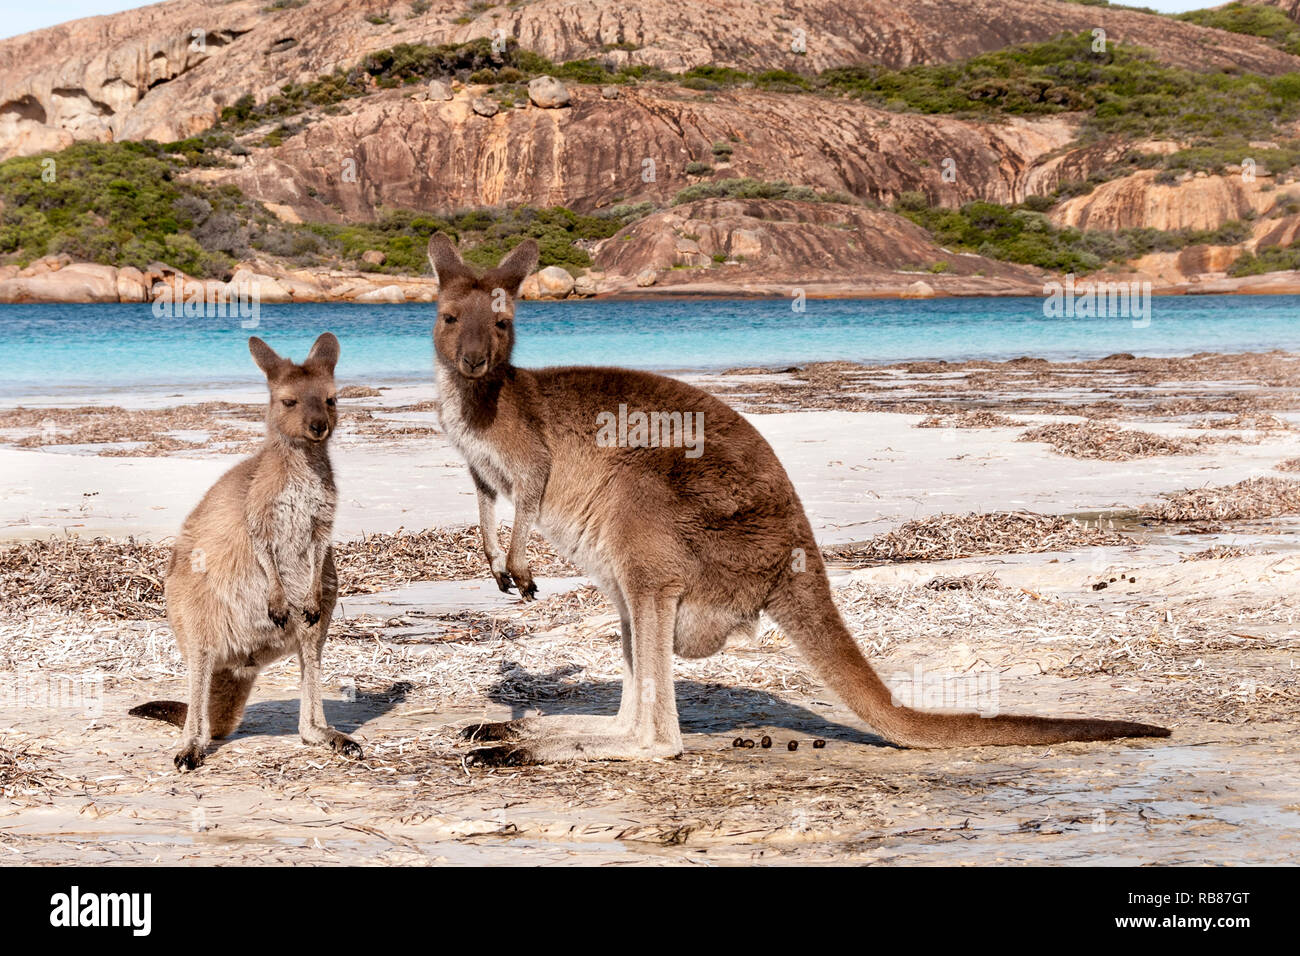 Wild kangaroo on the beach in Australia Stock Photo